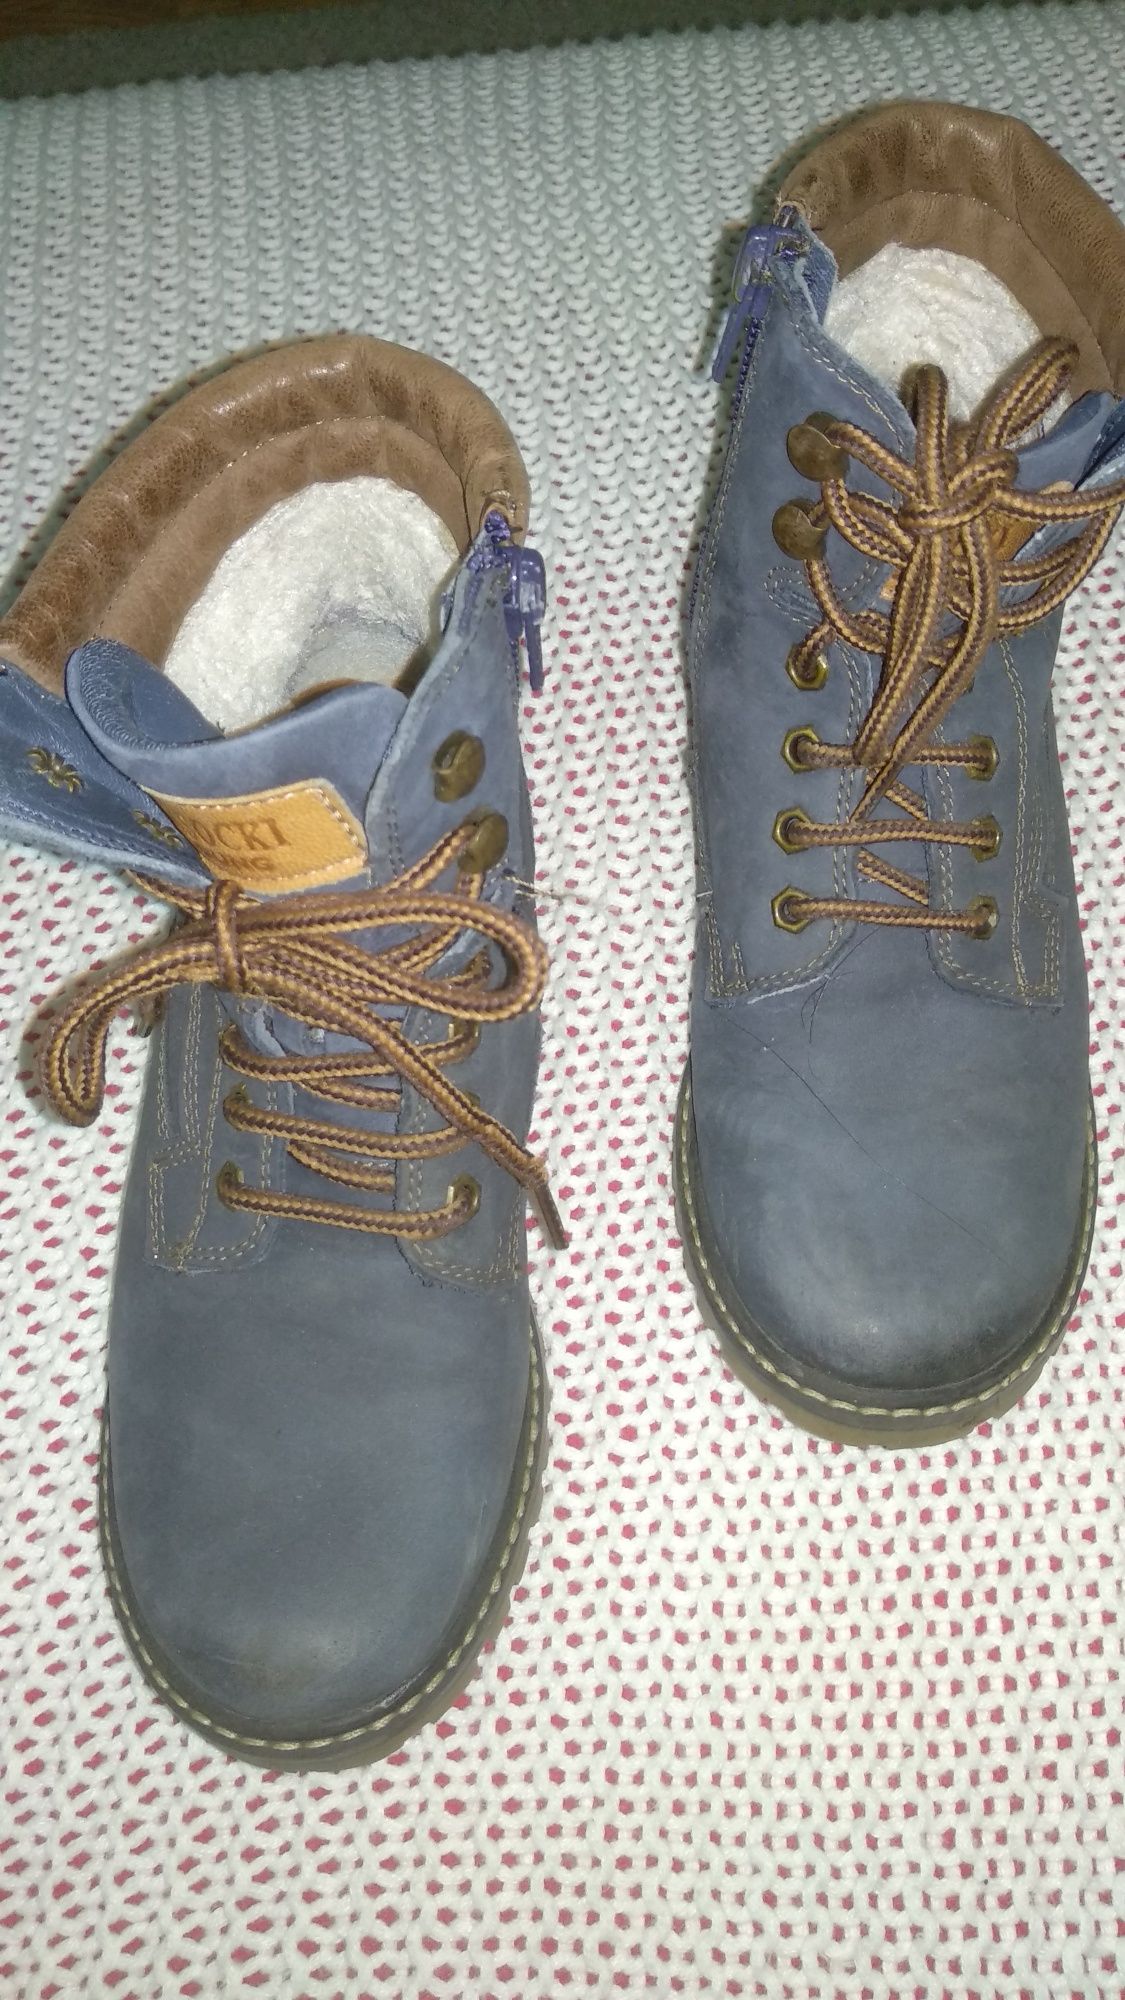 skórzane buty do kostki renomowanej firmy Lasocki, r. 33 wkł. 21 cm